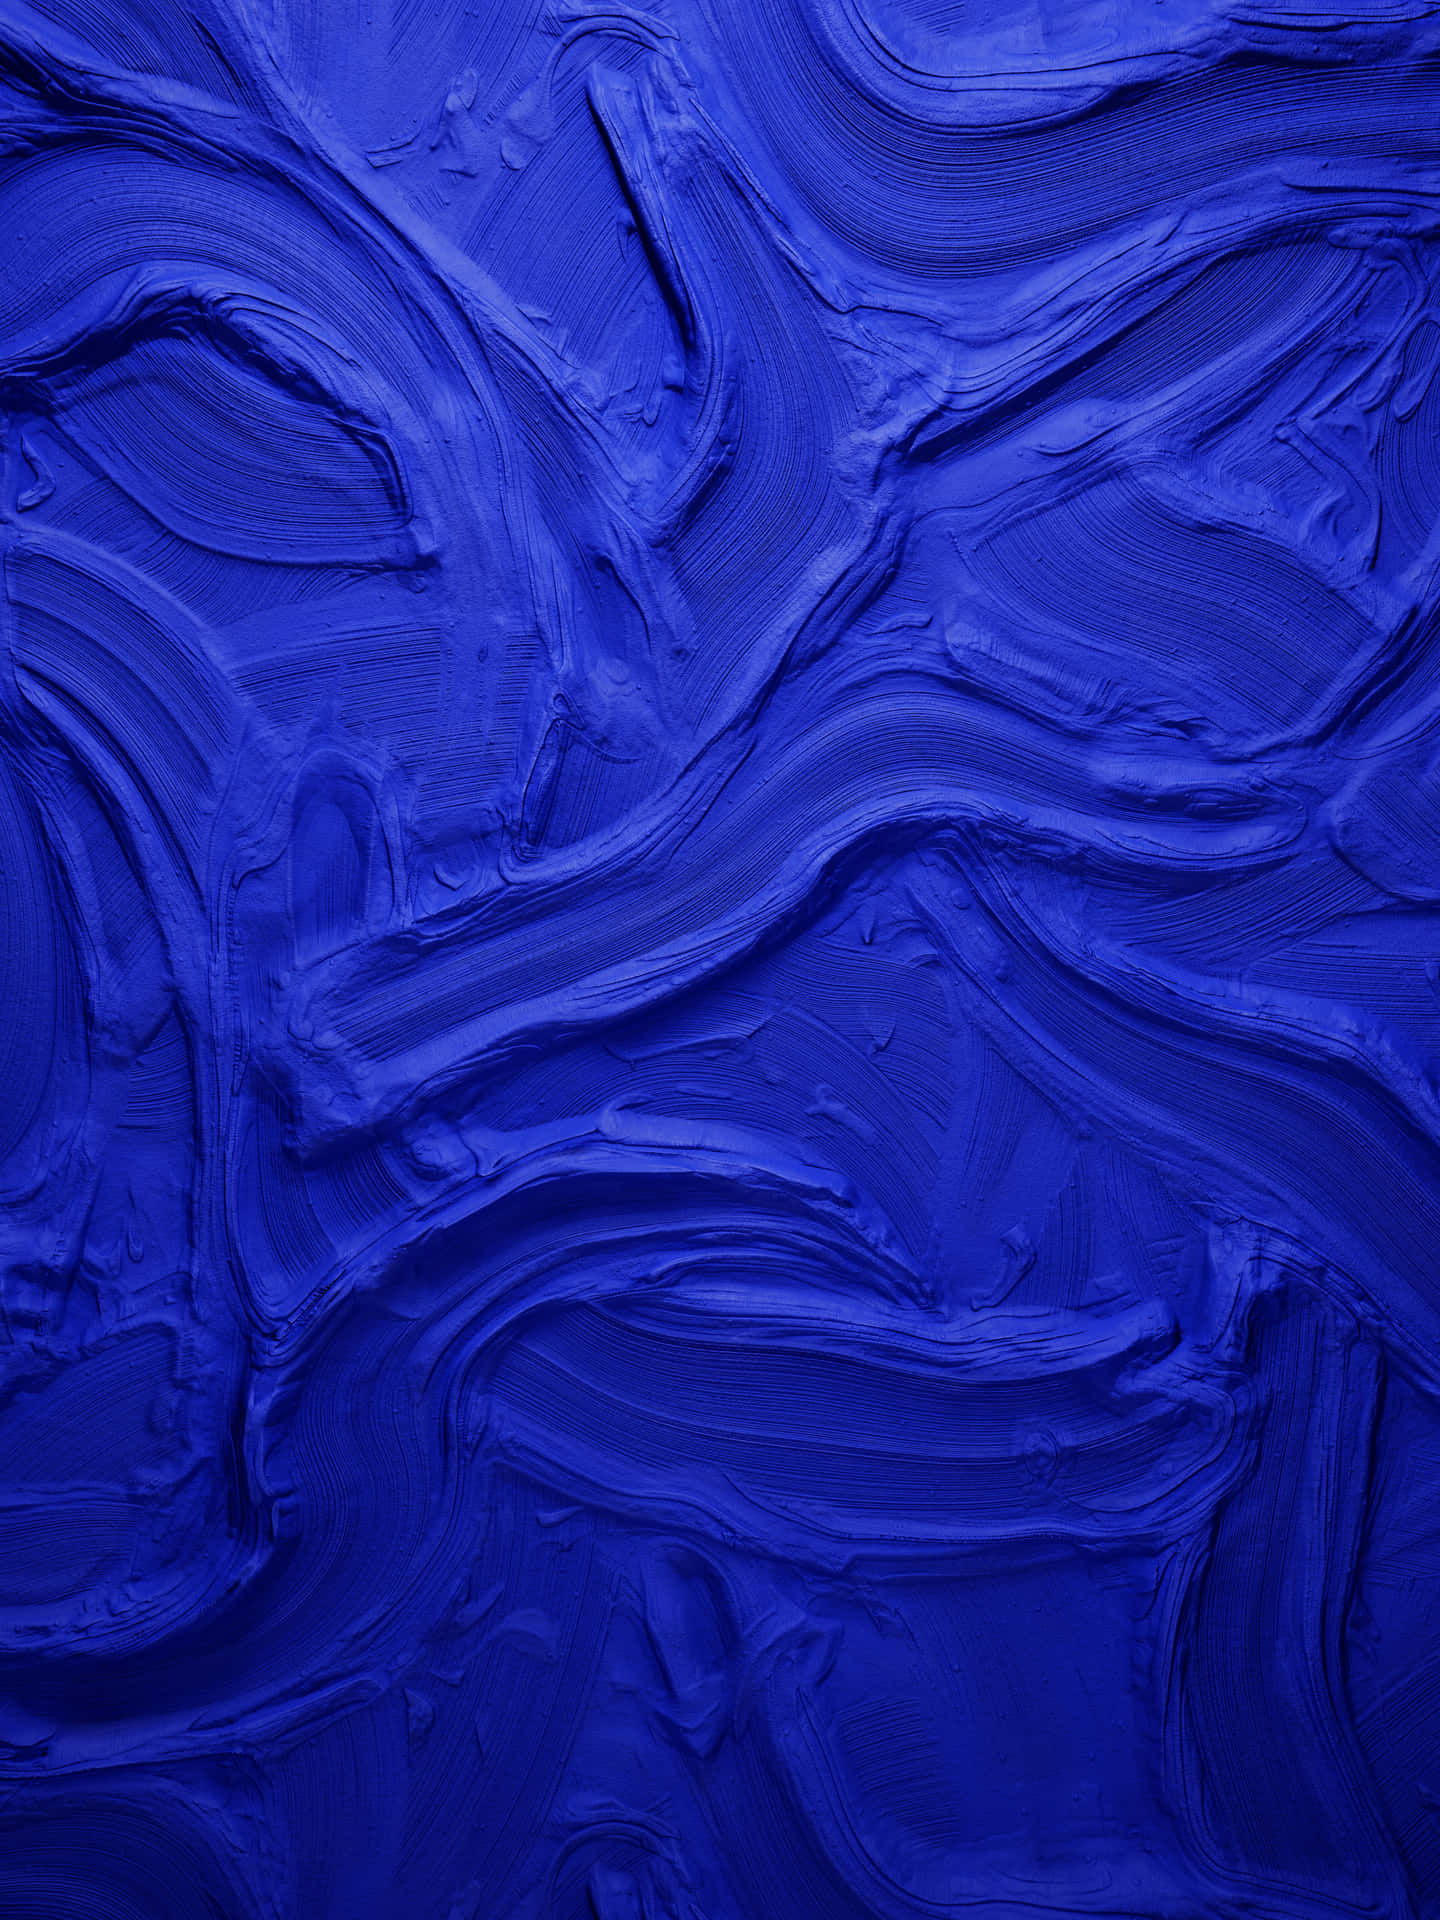 Imágenesde Textura De Lienzo Azul.